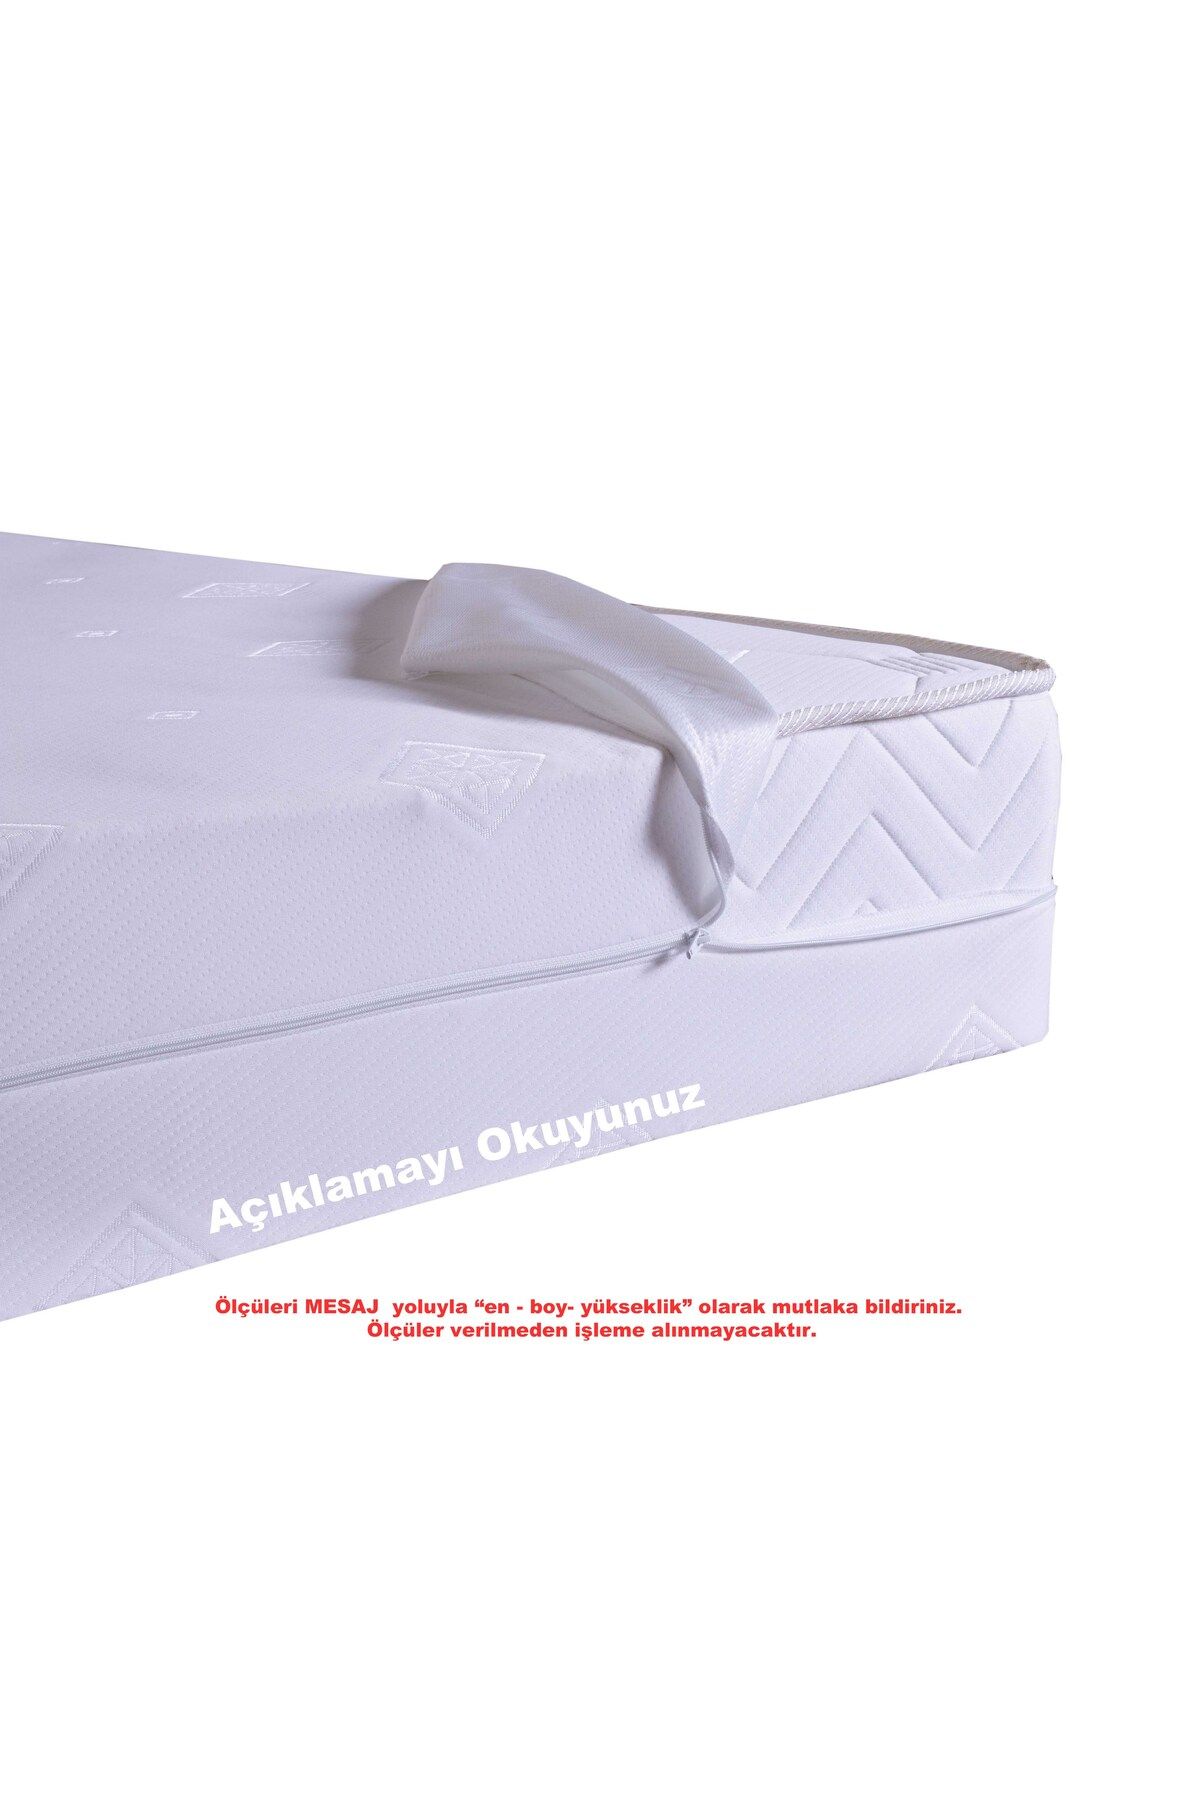 Artex Kılıf 90x190 Yatak Kılıfı Koruyucusu Fermuarlı Kılıf Yatağa Özel Üretim